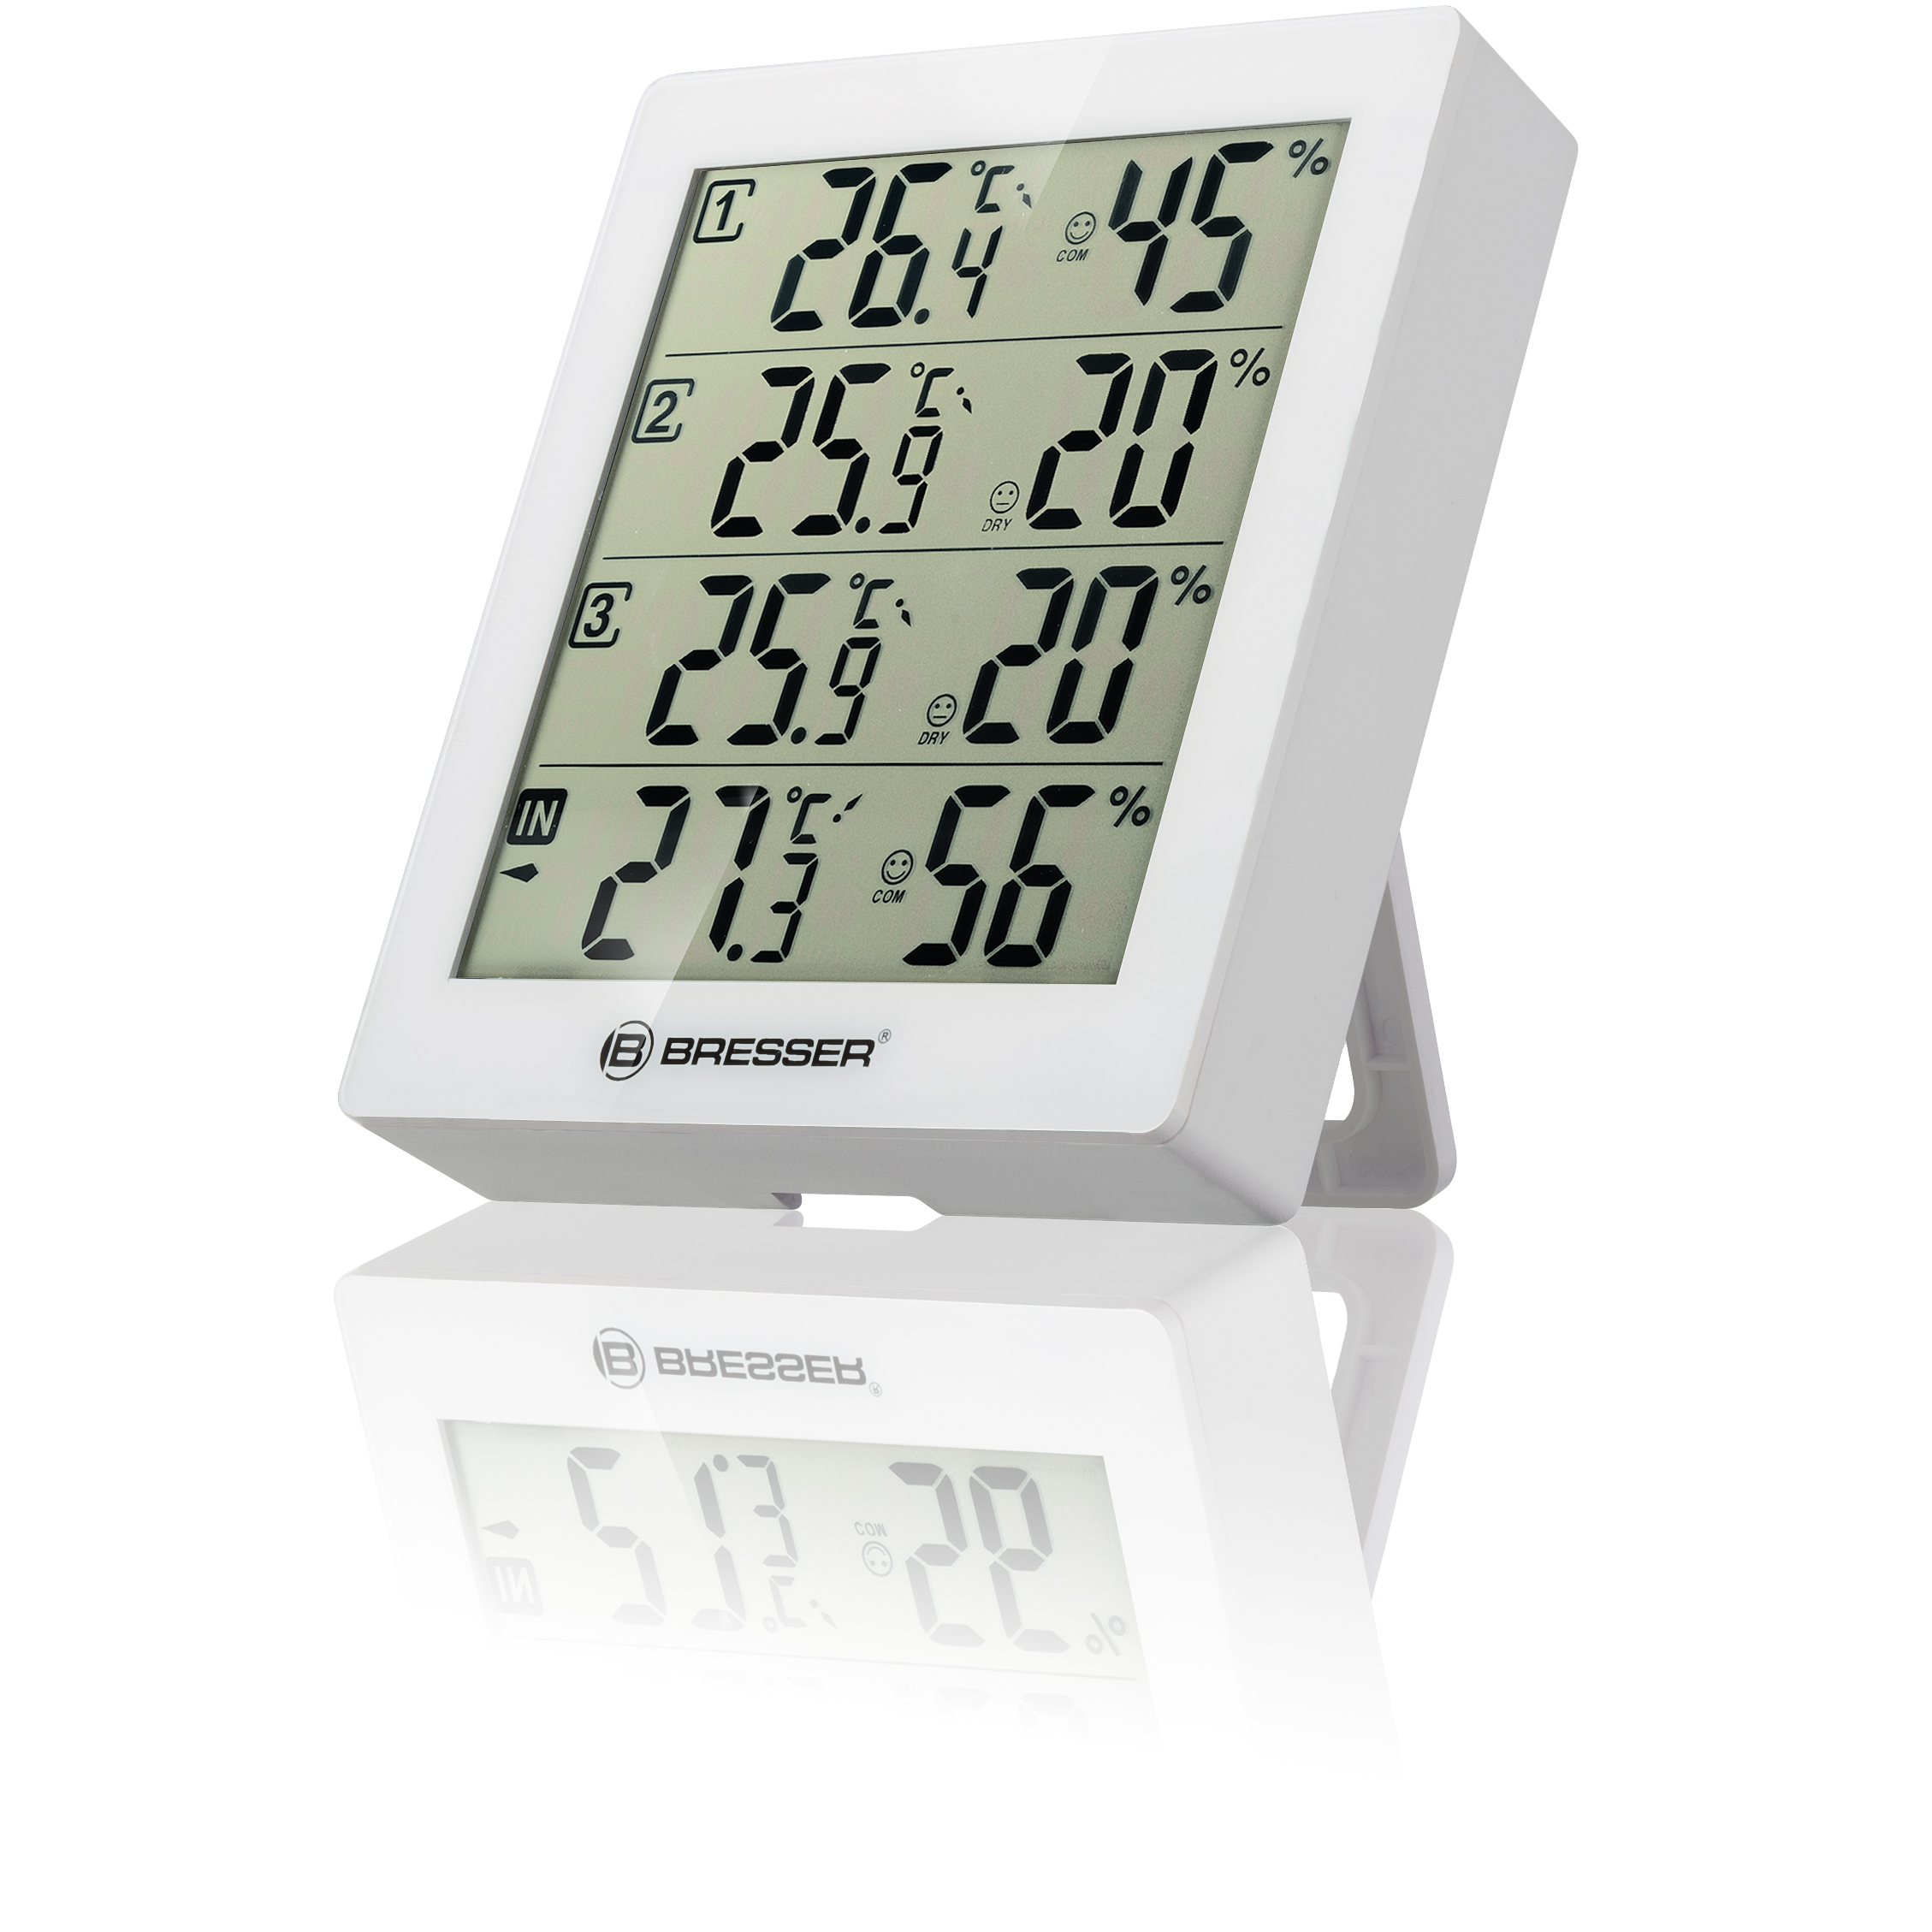 BRESSER ClimaTrend Hygro Quadro - Thermo- und Hygrometer mit 4 unabhängigen Messdaten (Refurbished)